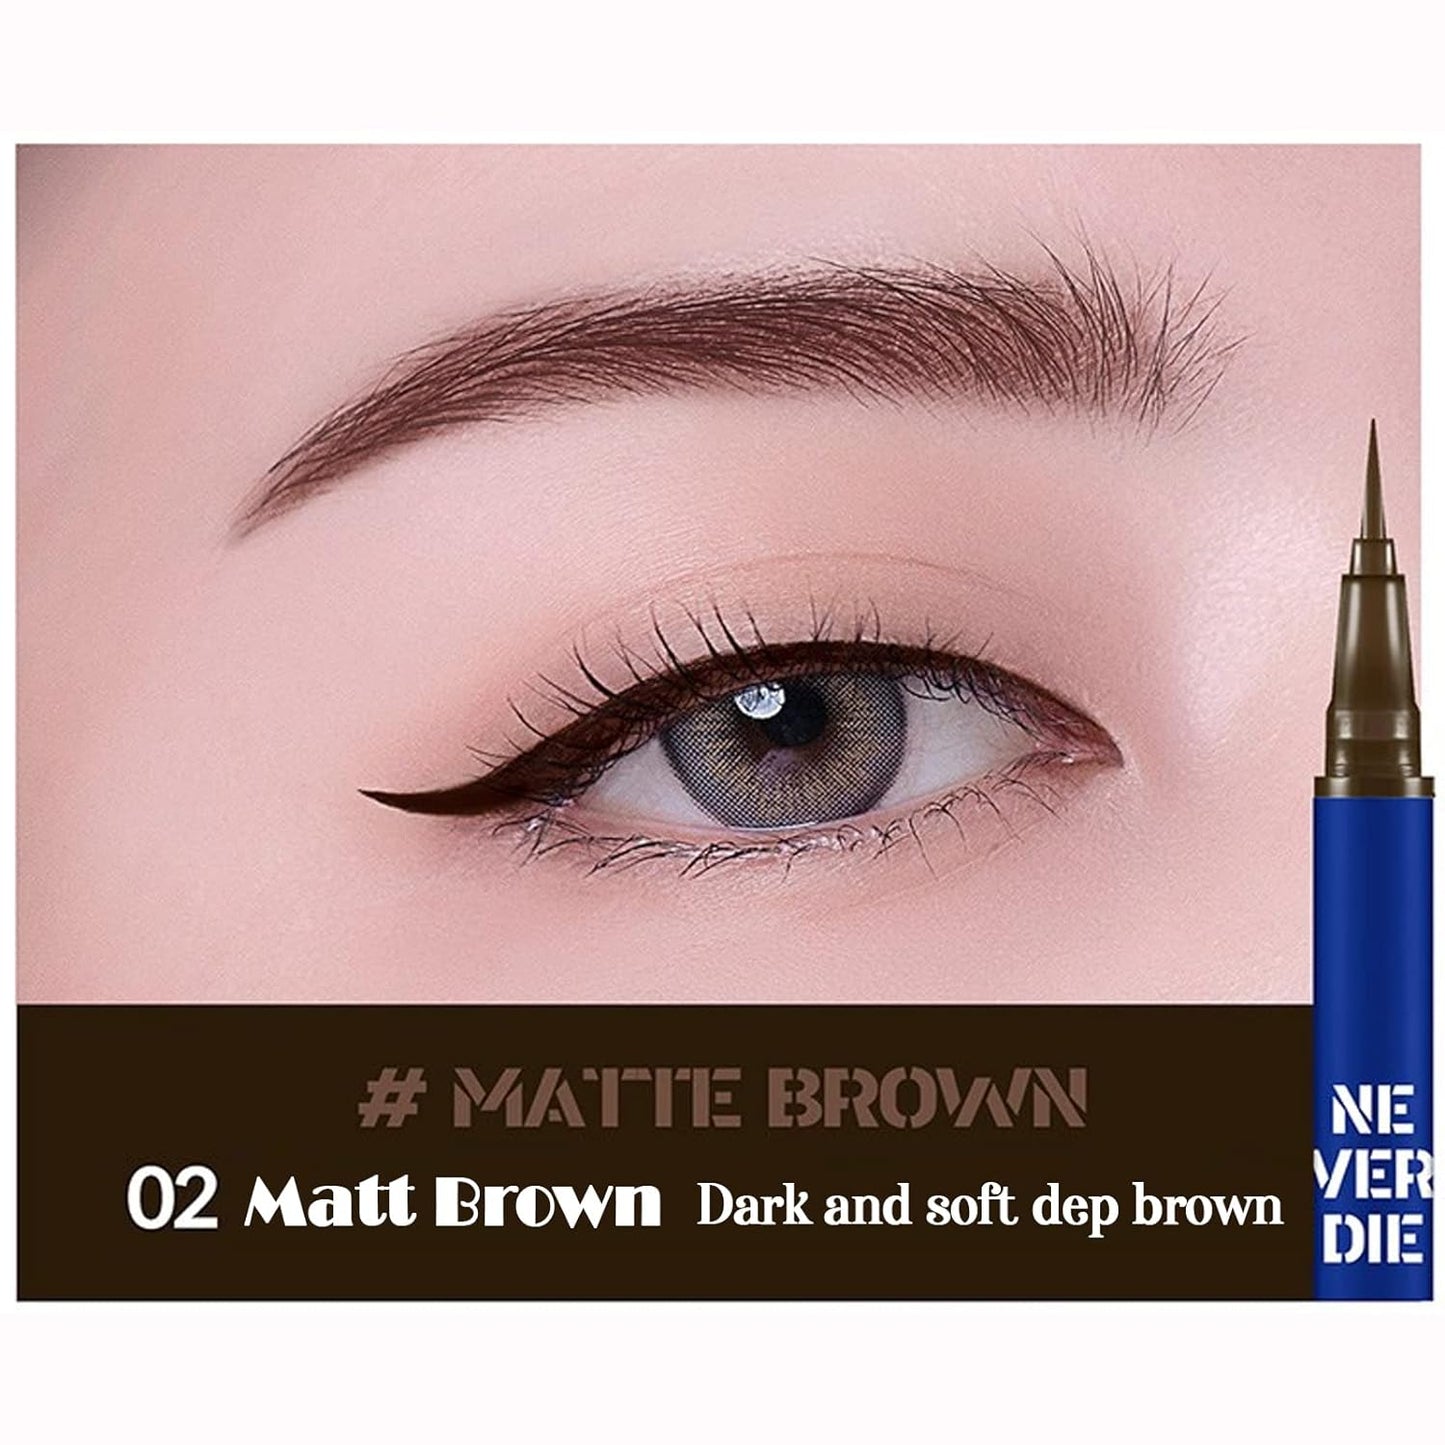 Bbia Never Die Brush Eyeliner 0.4g 2Colors / Long Lasting Eyeliner / Ultra-fine Brush Eyeliner / Pen Eyeliner